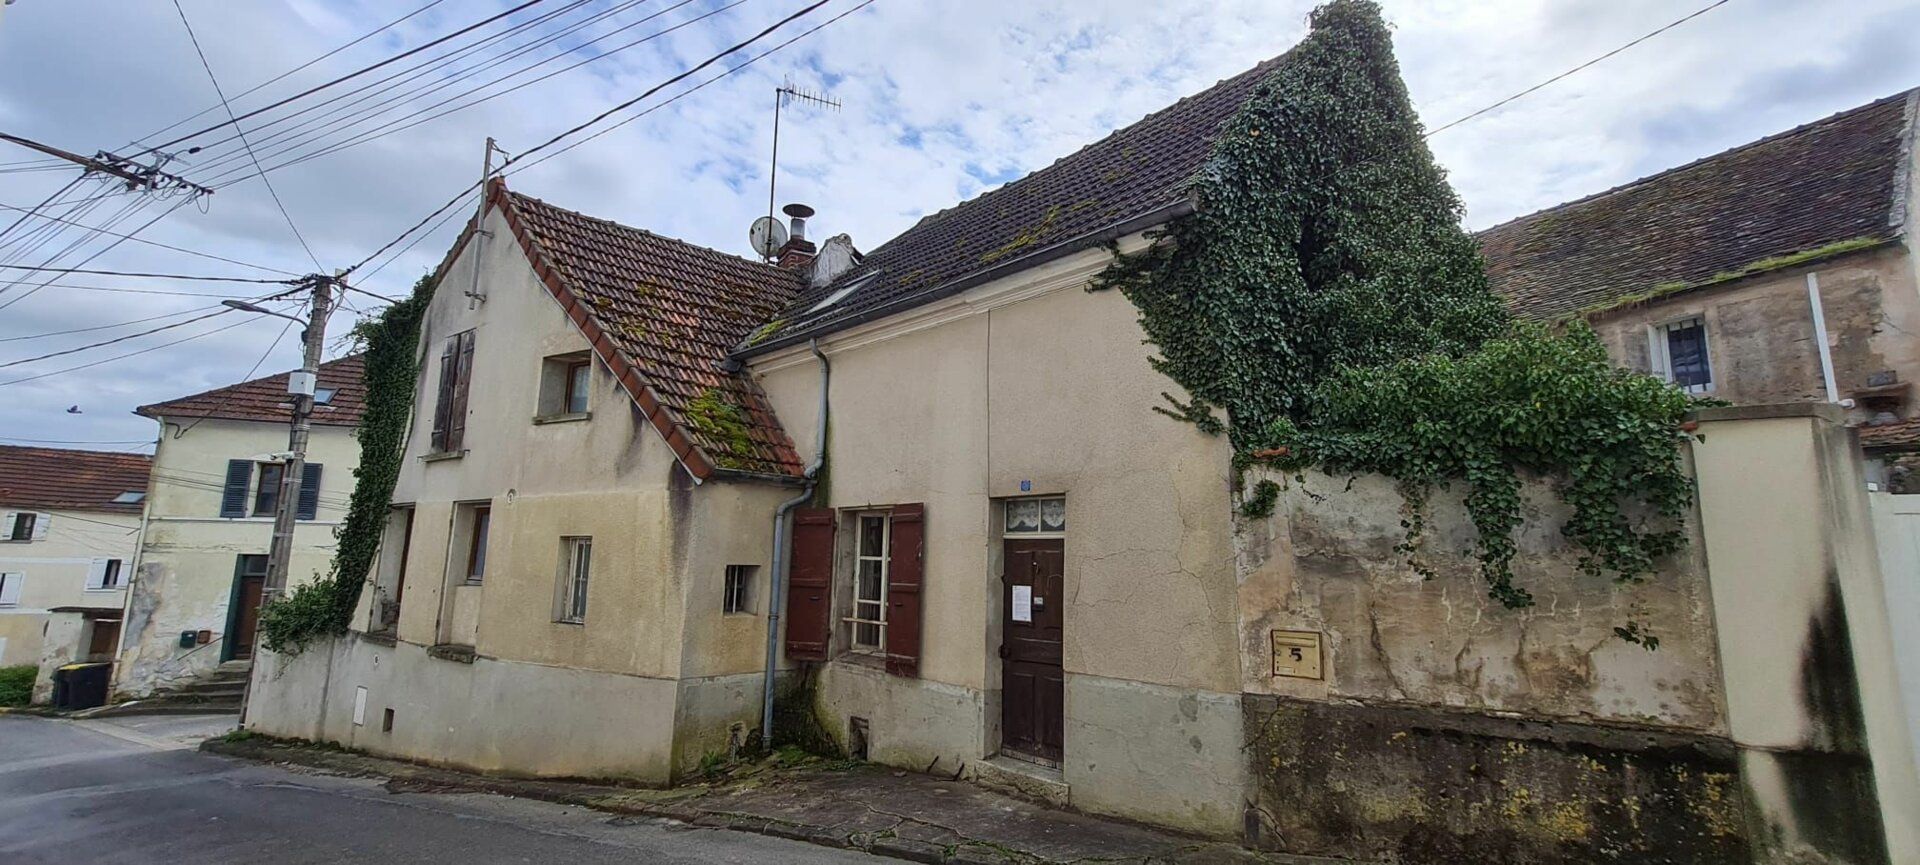 Maison à vendre 4 116m2 à Saâcy-sur-Marne vignette-2